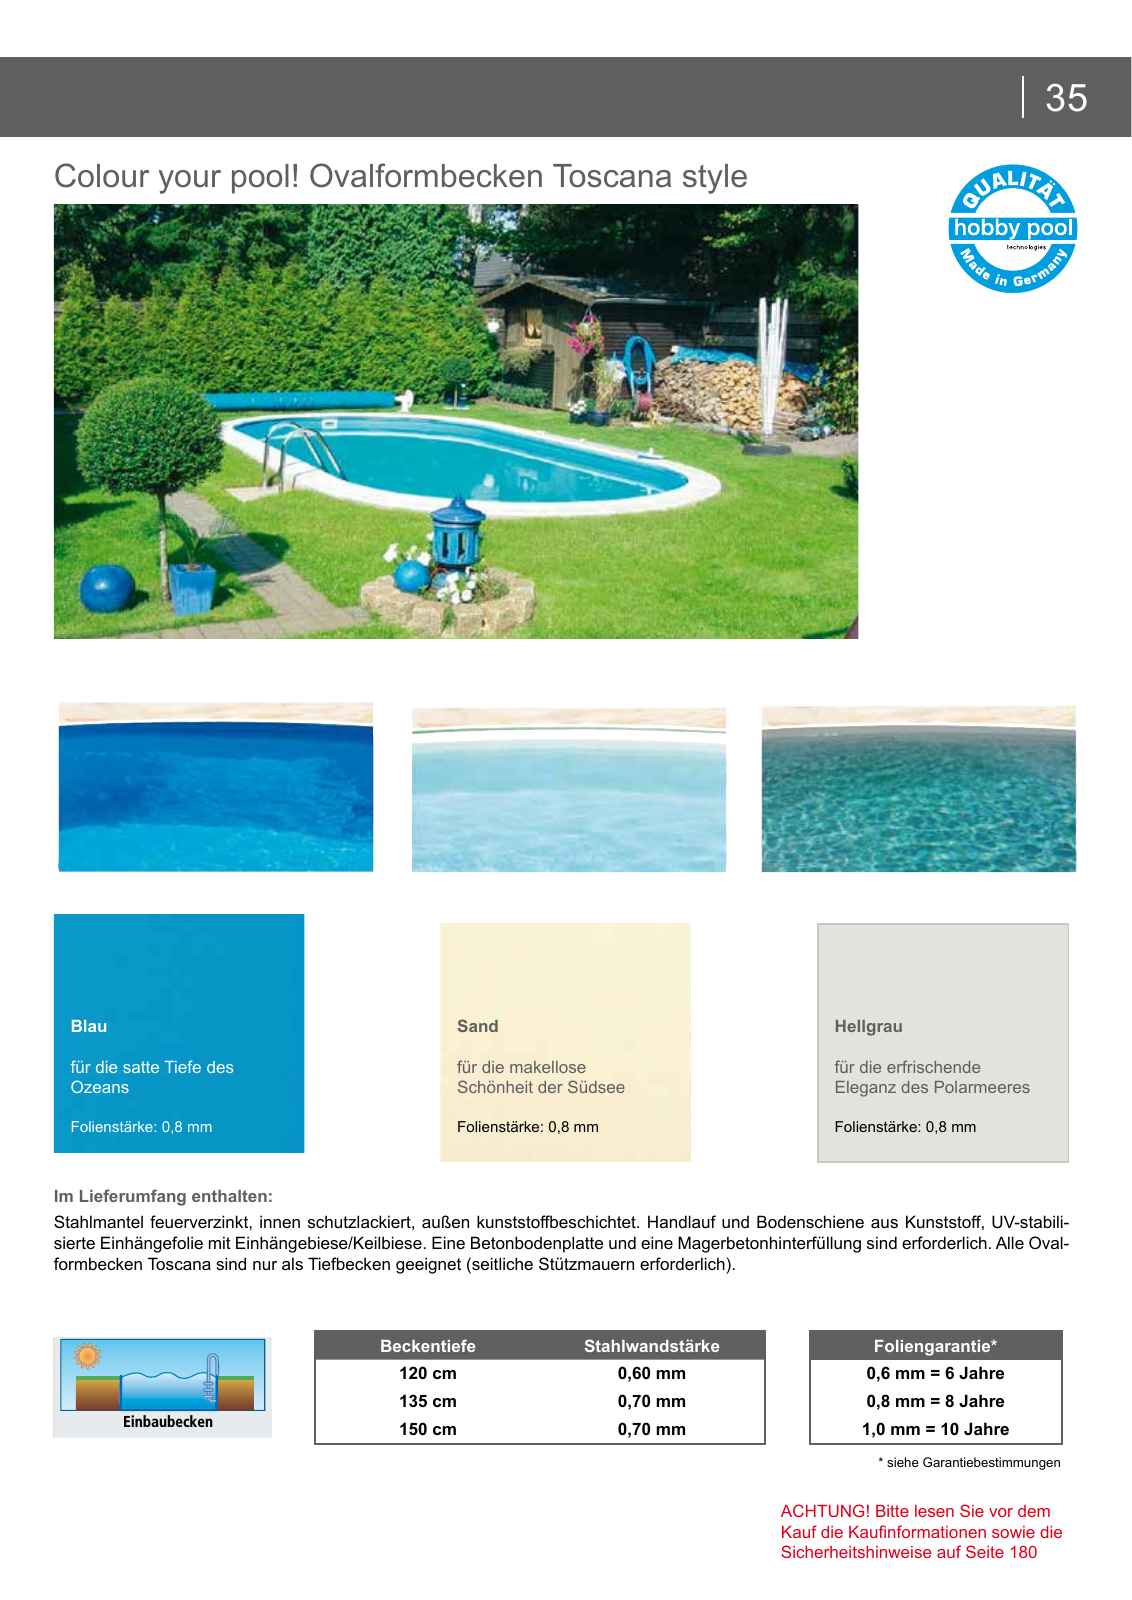 Vorschau arcana Schwimmbadkatalog 2016 Seite 35